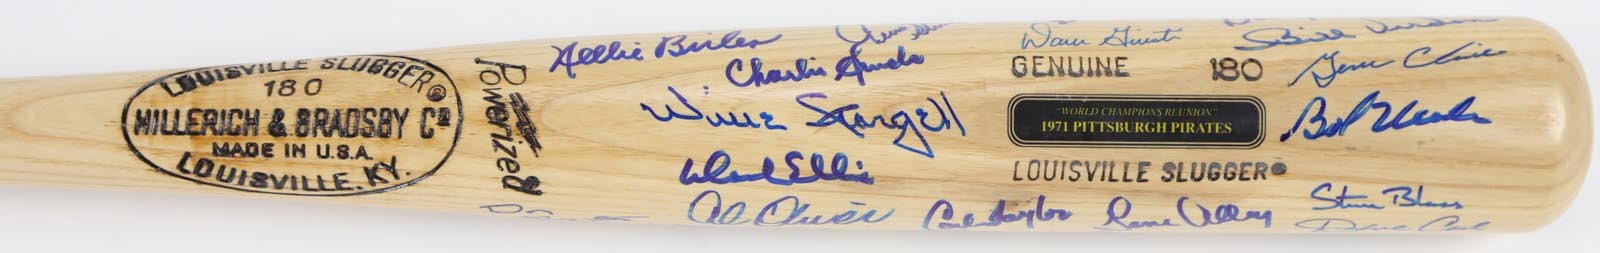 1971 Pittsburgh Pirates "World Champions Reunion" Signed Bat (23)